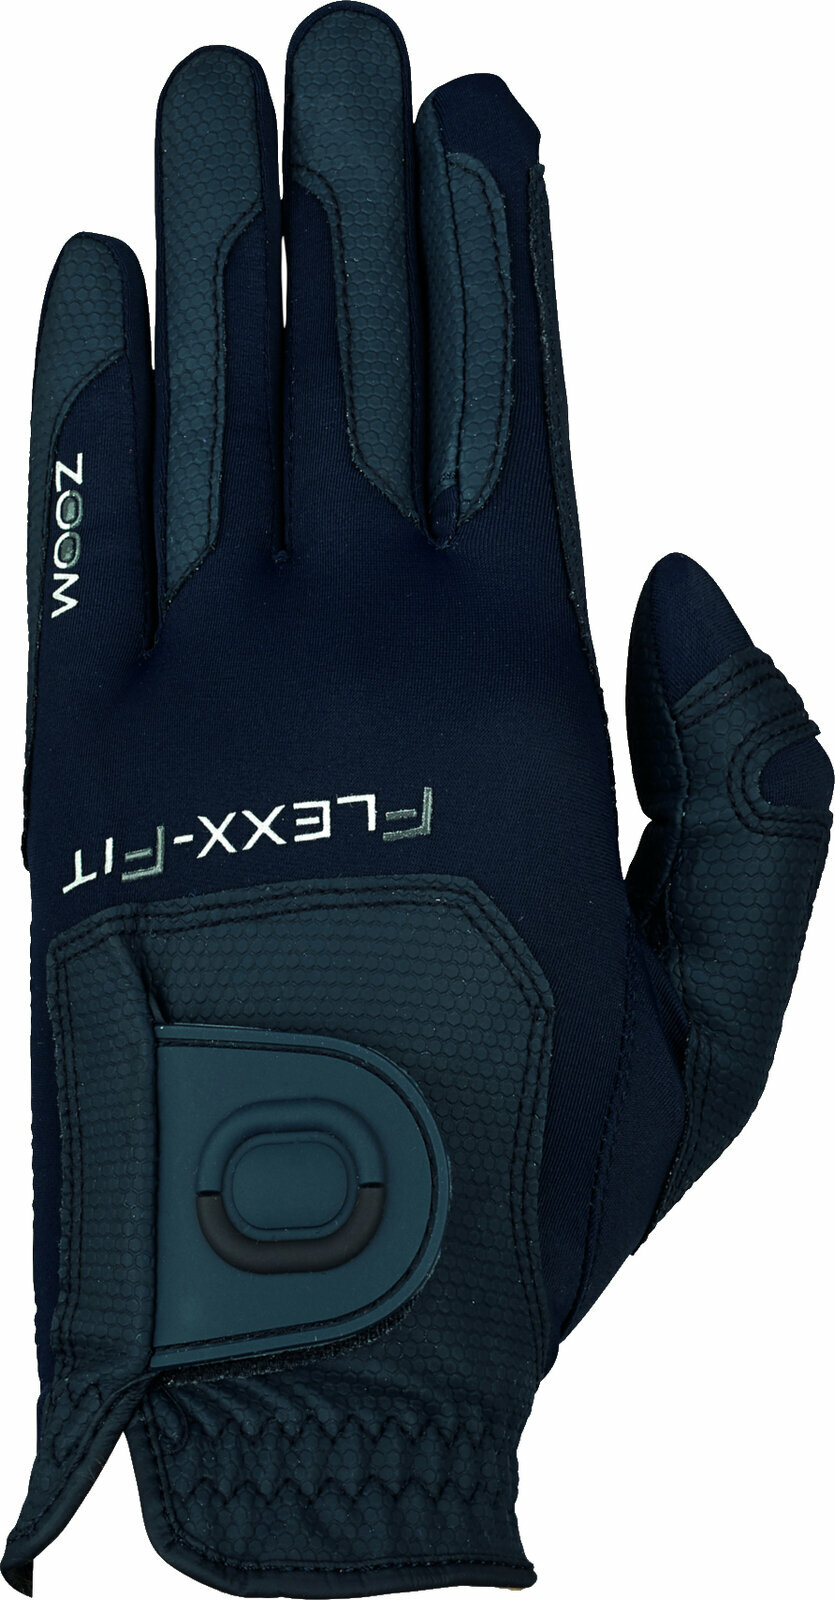 Rukavice Zoom Gloves Weather Style Mens Golf Glove Navy LH